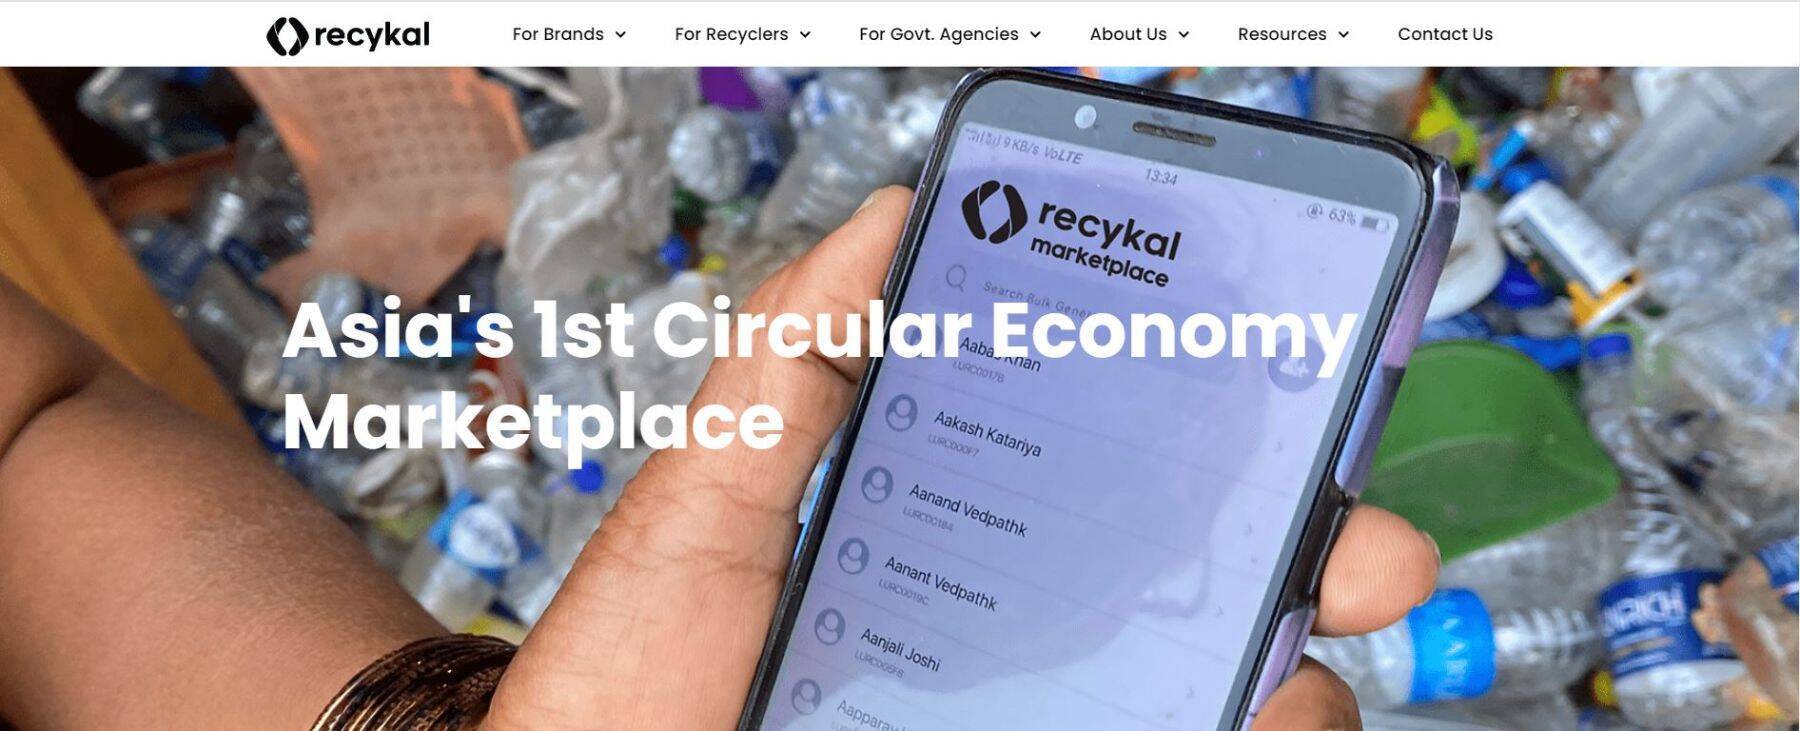 【CEOインタビュー】インドのゴミ問題解決に挑むスタートアップRecykal、アプリでステークホルダー間の取引を最適化する